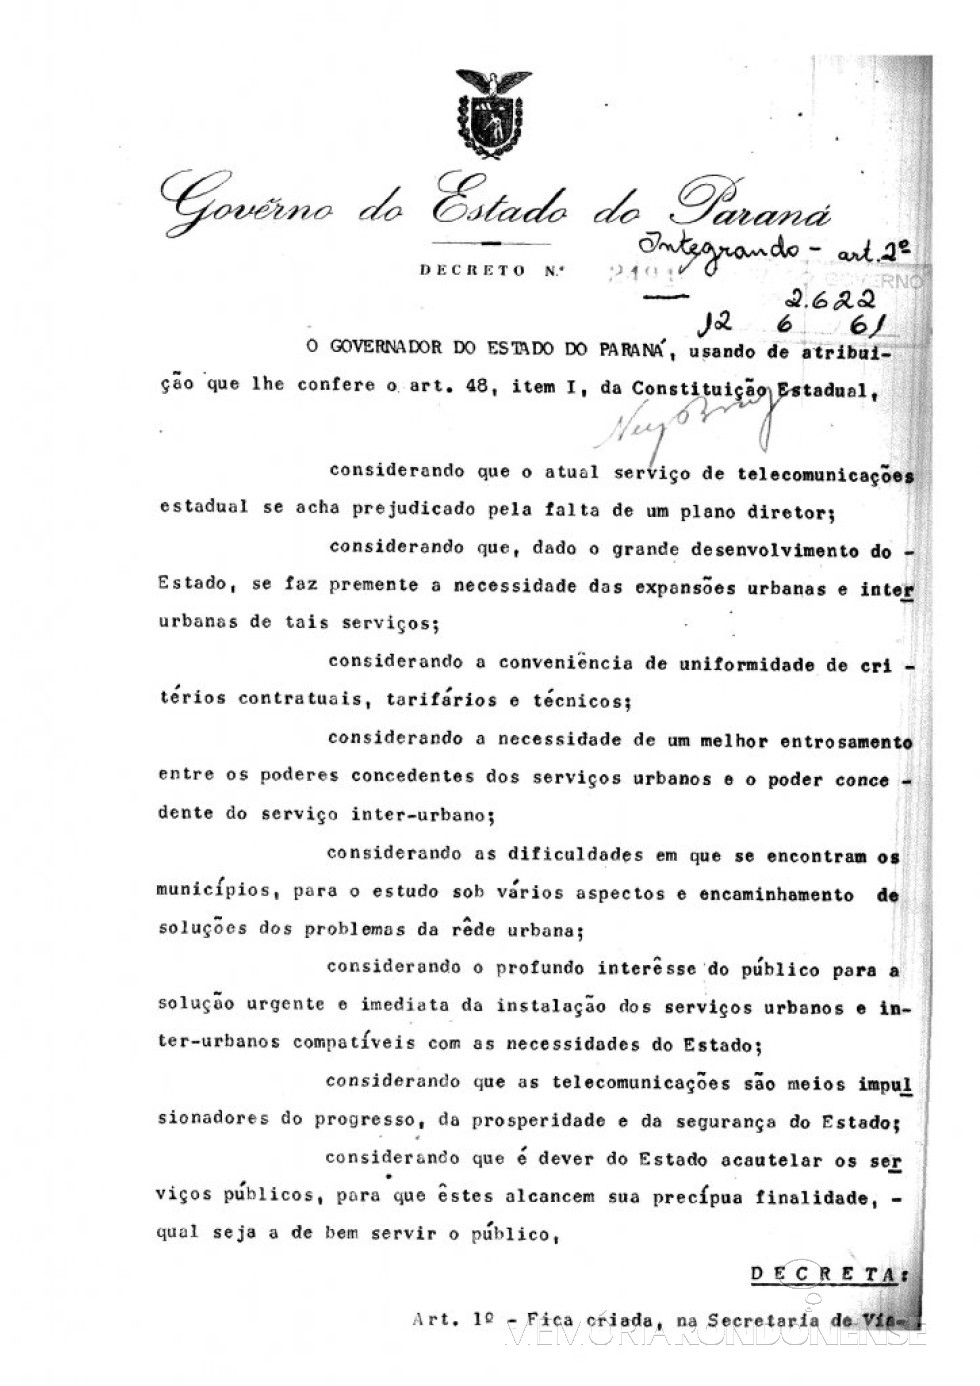 || Página inicial do Decreto nº 2494, que criou a Comissão Estadual de Telecomunicações.
Imagem: Acervo Aqrquivo Público do Paraná - FOTO 6  -